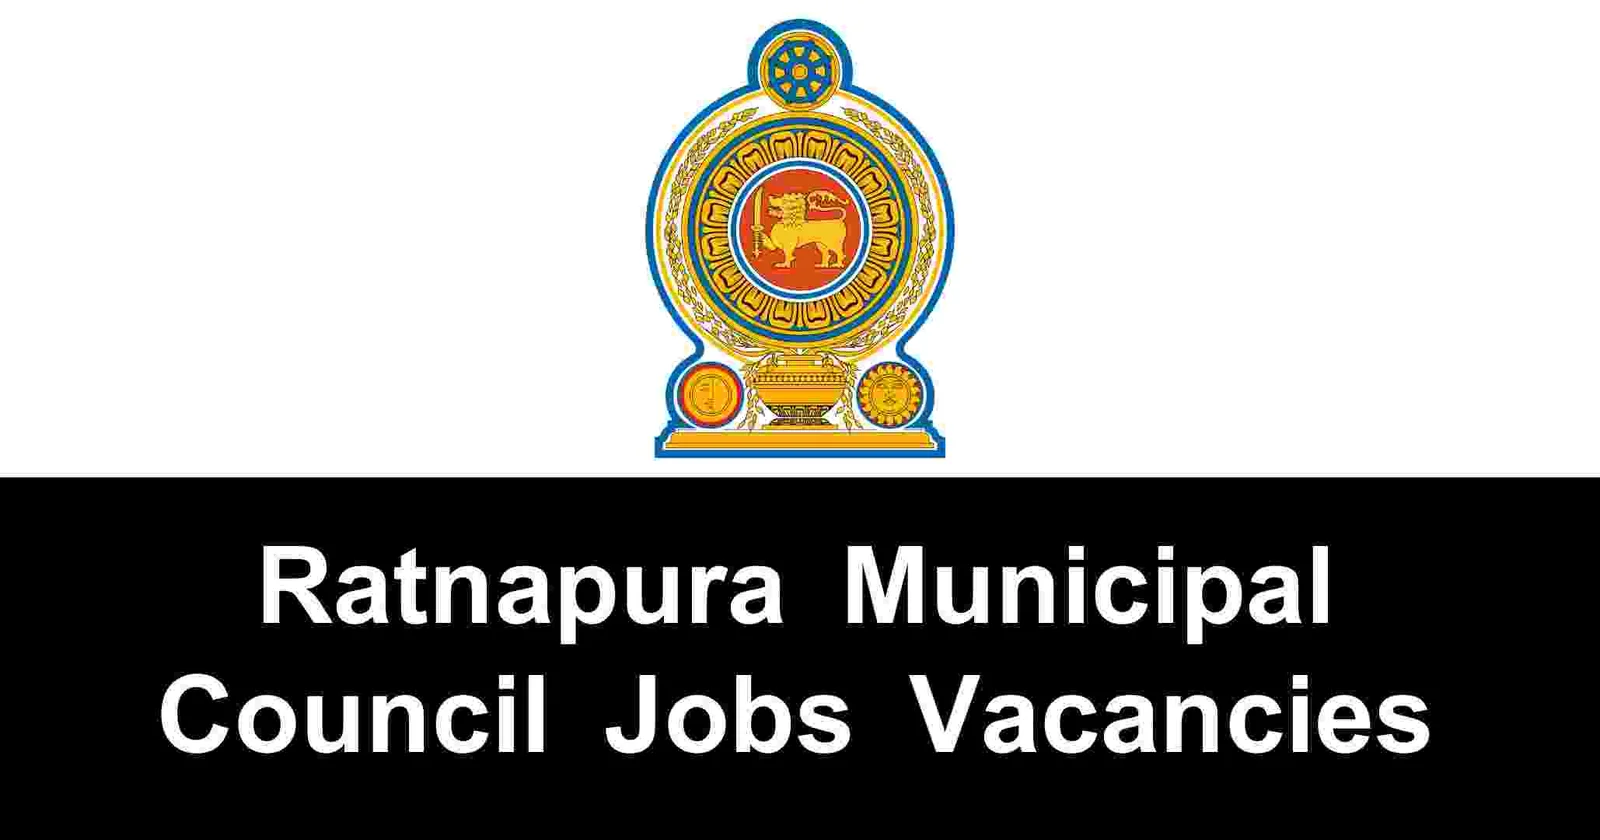 Ratnapura Municipal Council Jobs Vacancies